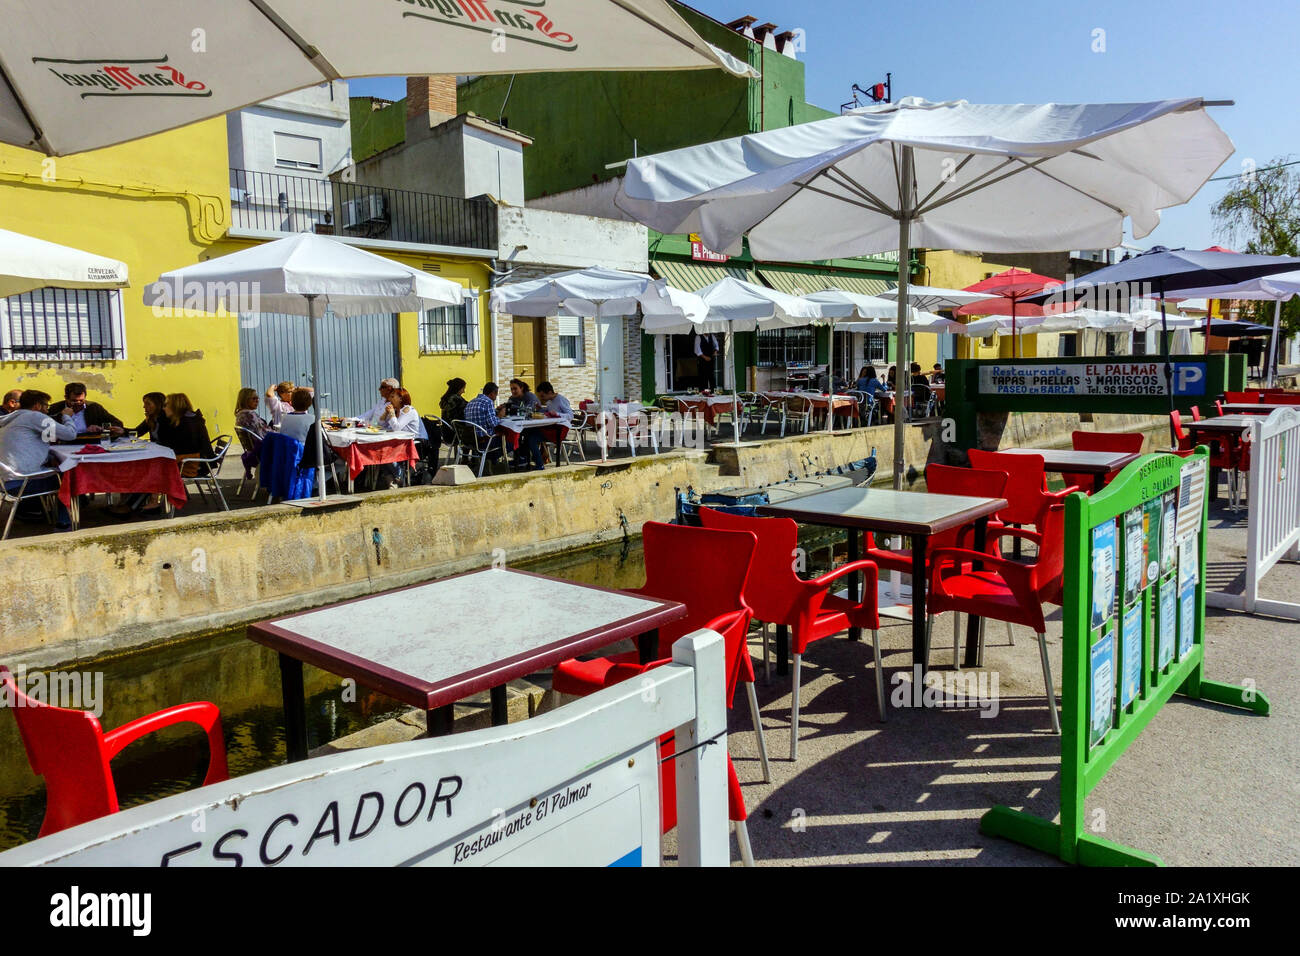 Spagna Valencia, le persone vengono a mangiare in molti ristoranti e tapas bar a canale di acqua nel meraviglioso piccolo villaggio di El Palmar, Albufera Parco naturale Foto Stock